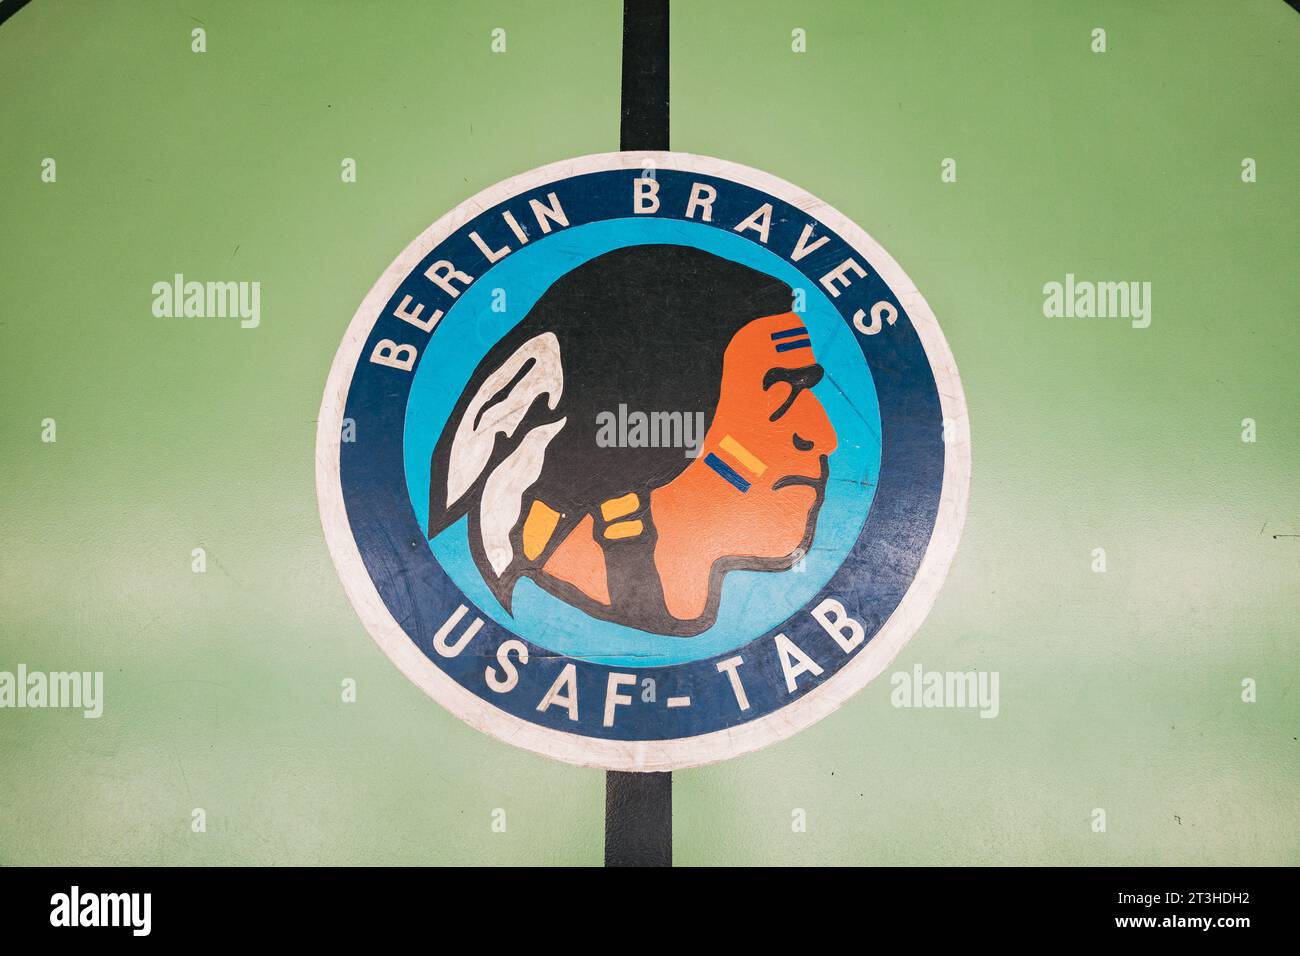 Das handbemalte Siegel des alten Basketballteams der United States Air Force Berlin Braves am Flughafen Tempelhof. Mit einem indianischen Profil Stockfoto